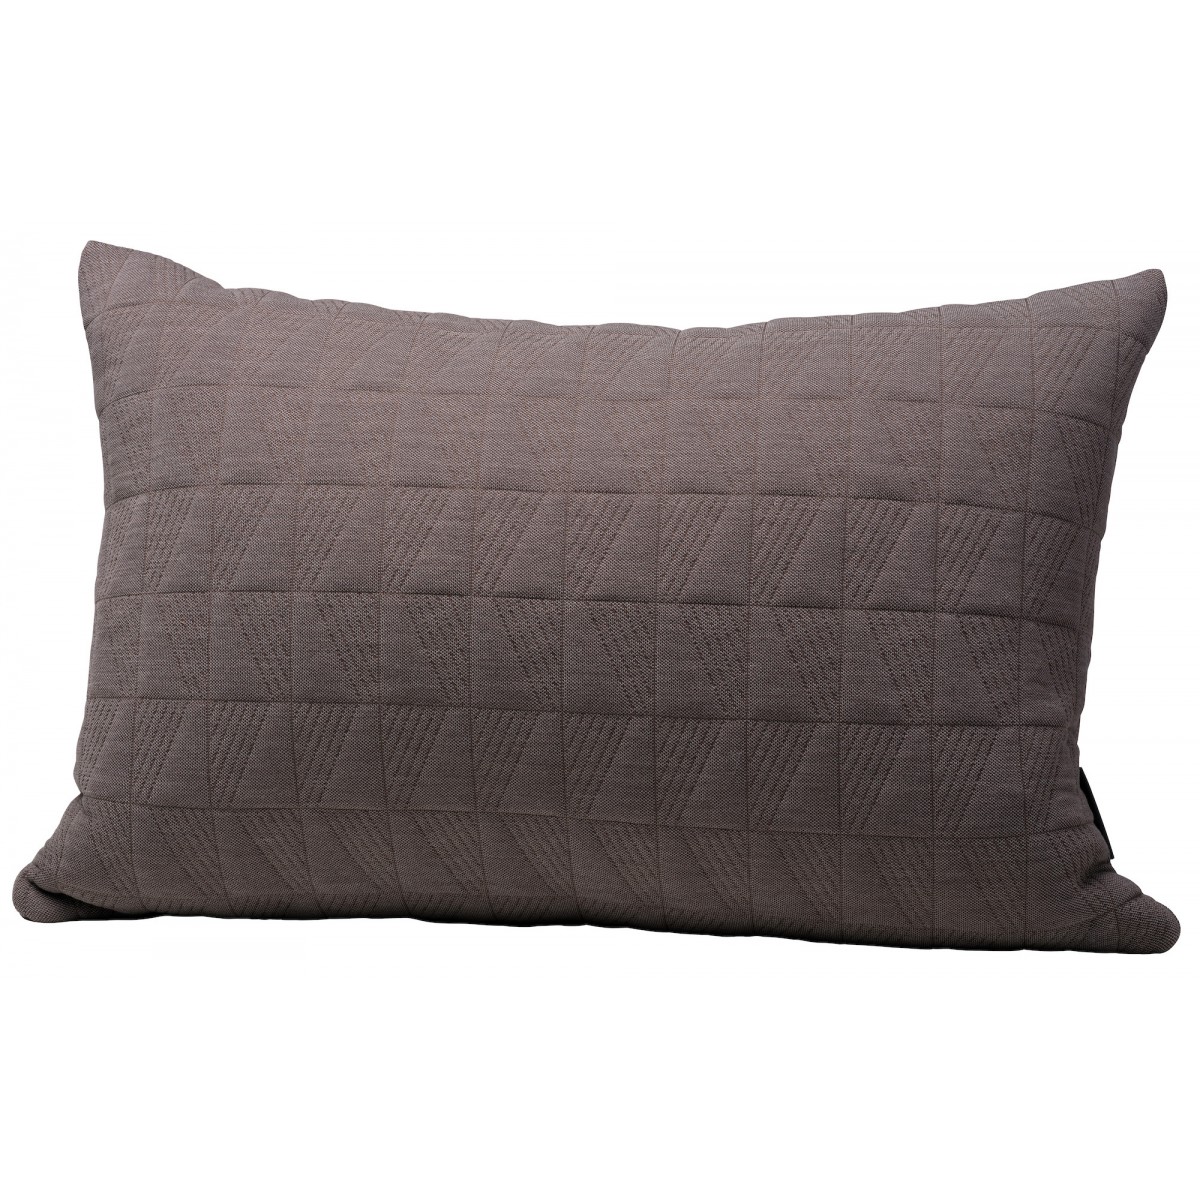 60x40cm, Earth brown - Trapez cushion